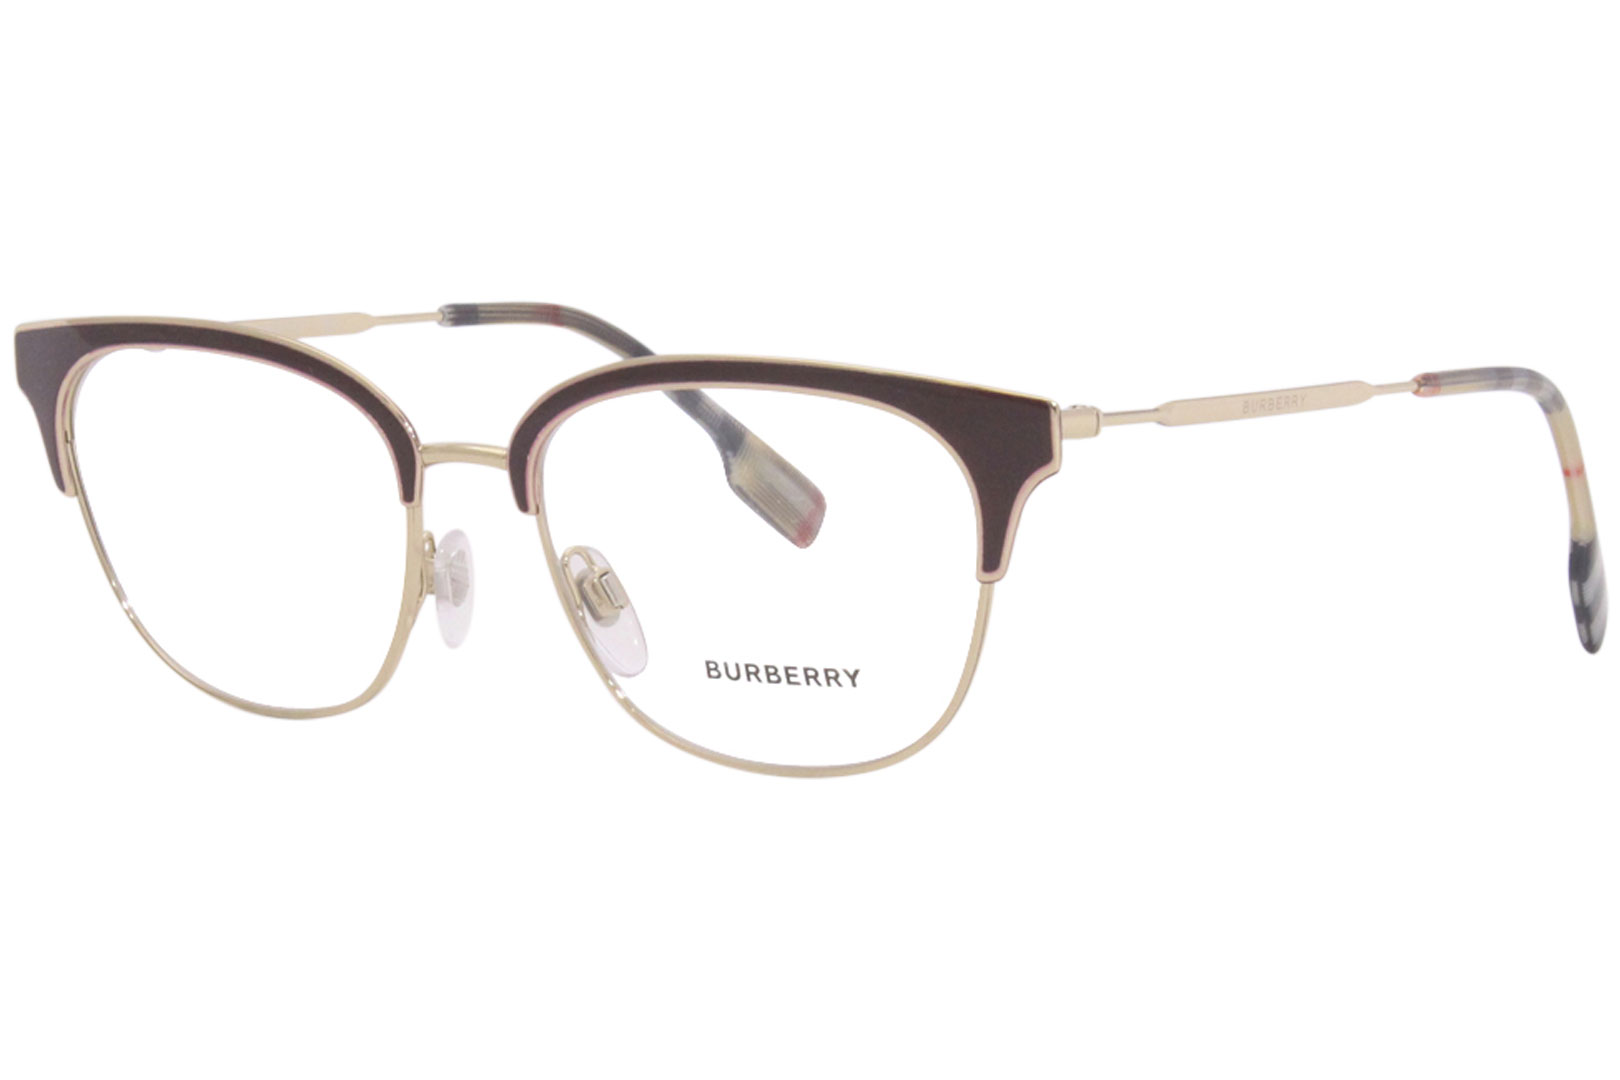 Burberry Eyeglasses Frame Women's B1334 1292 Gold/Bordeaux 52-17-140 |  